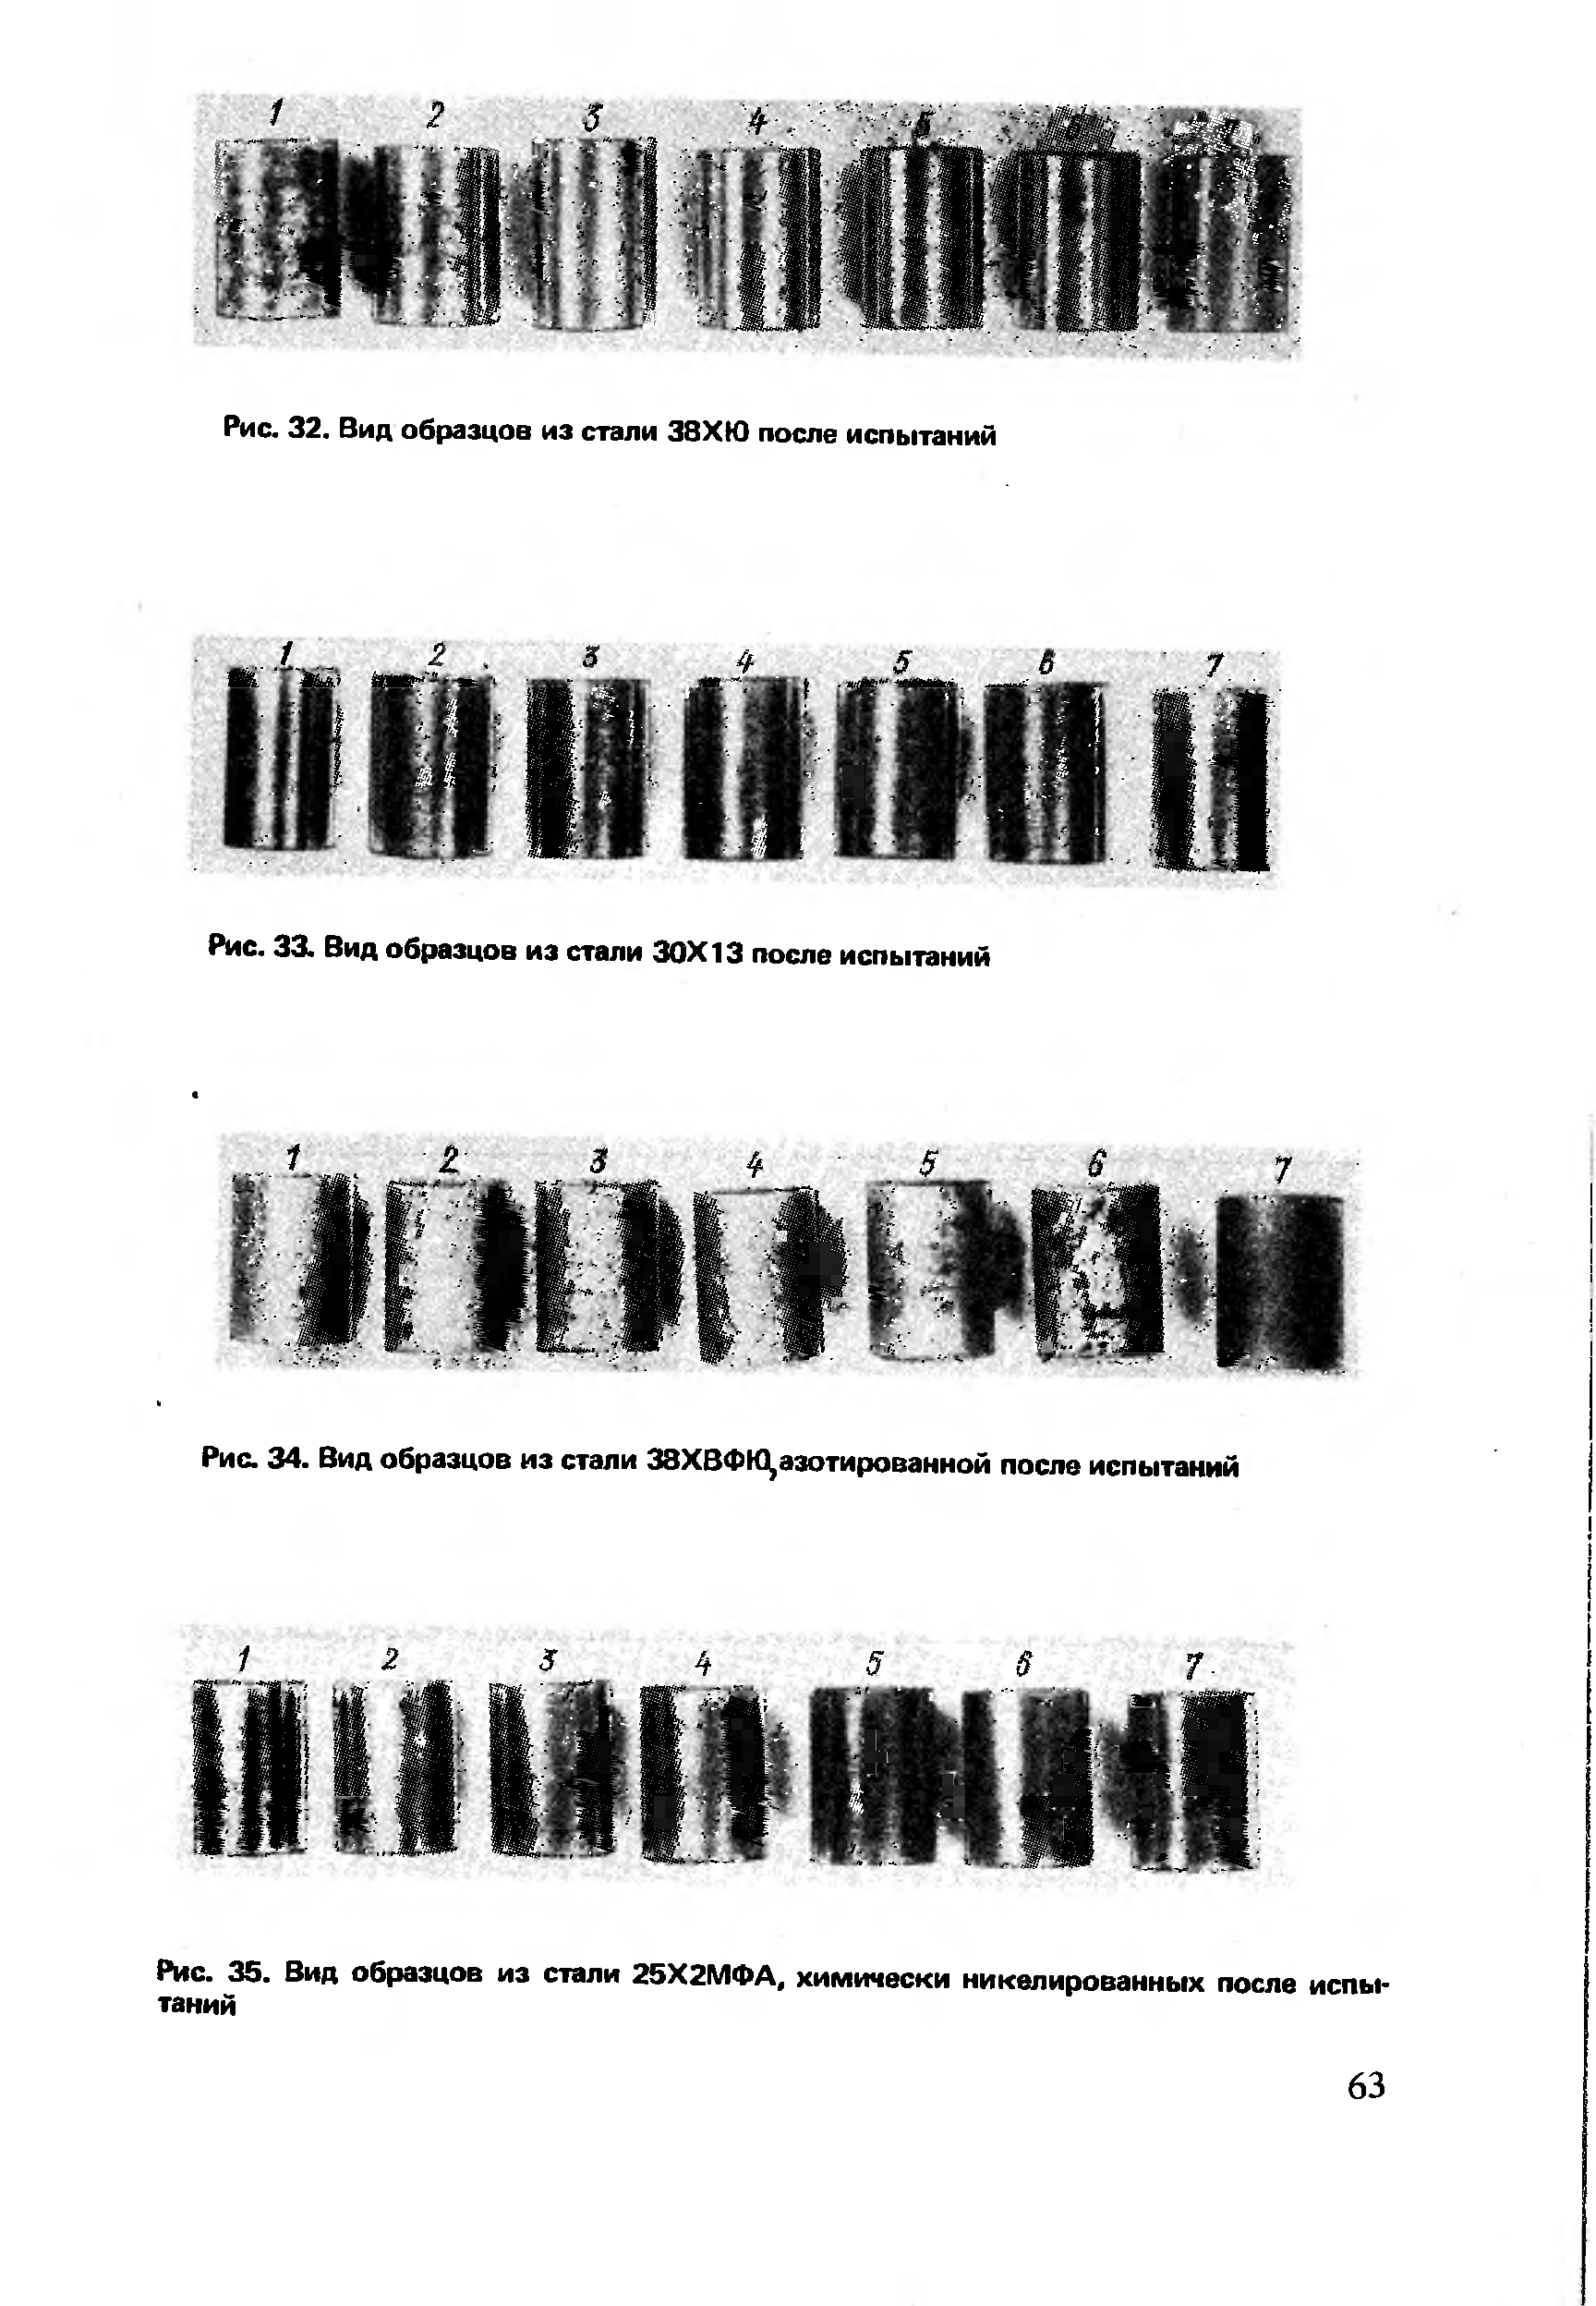 Рис. 34. Вид образцов из стали 38ХВФК1,азотированной после испытаний
